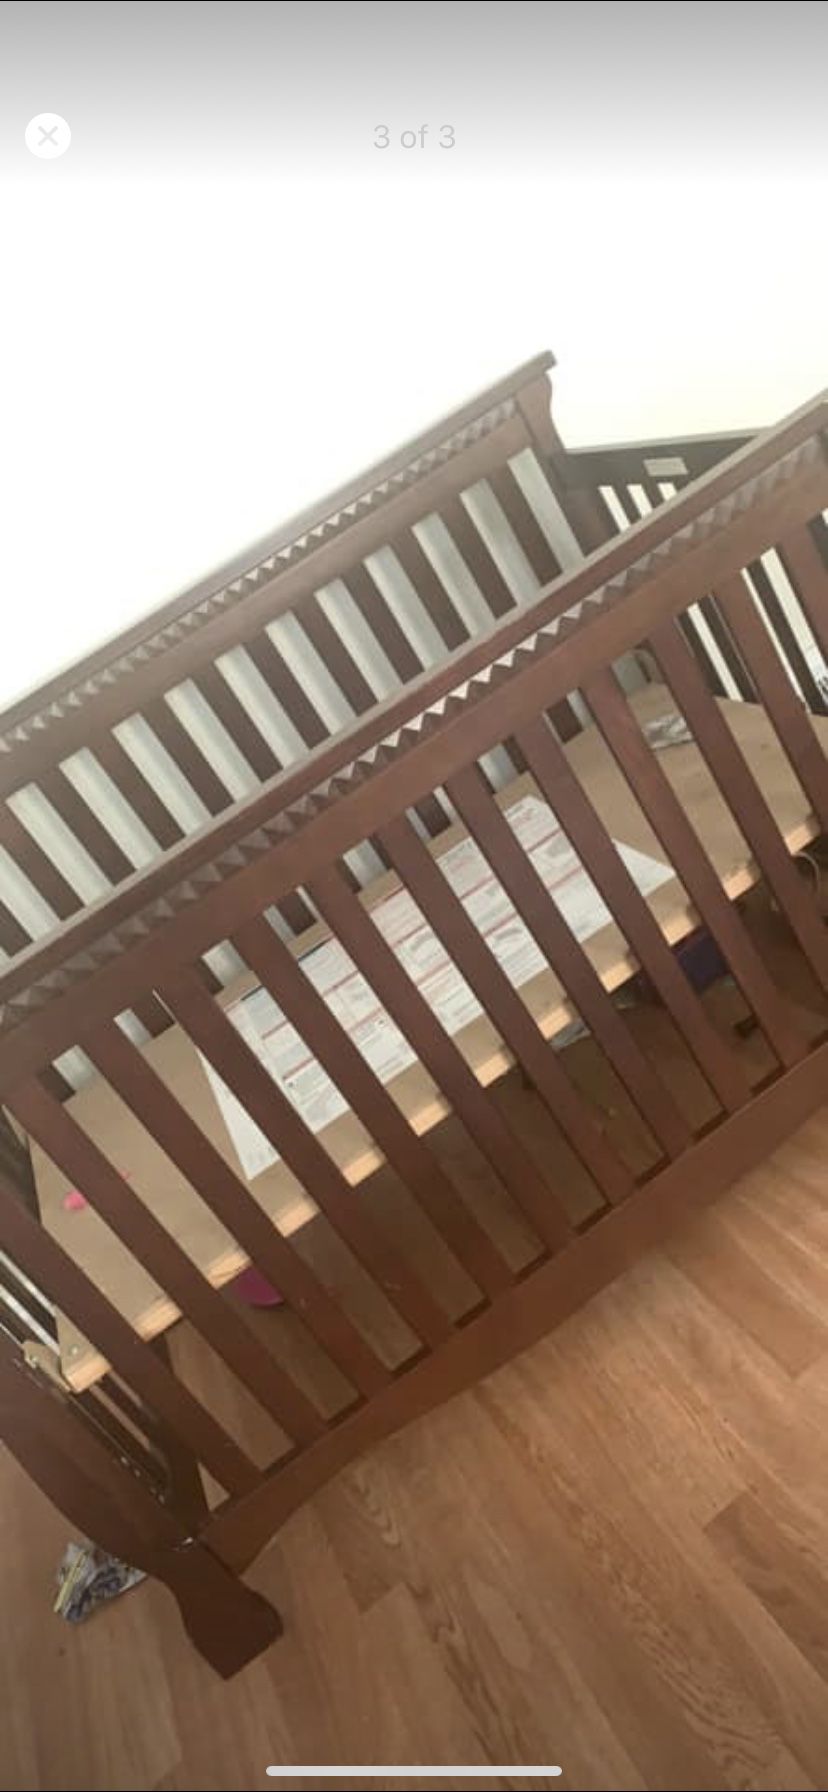 Brand new baby crib